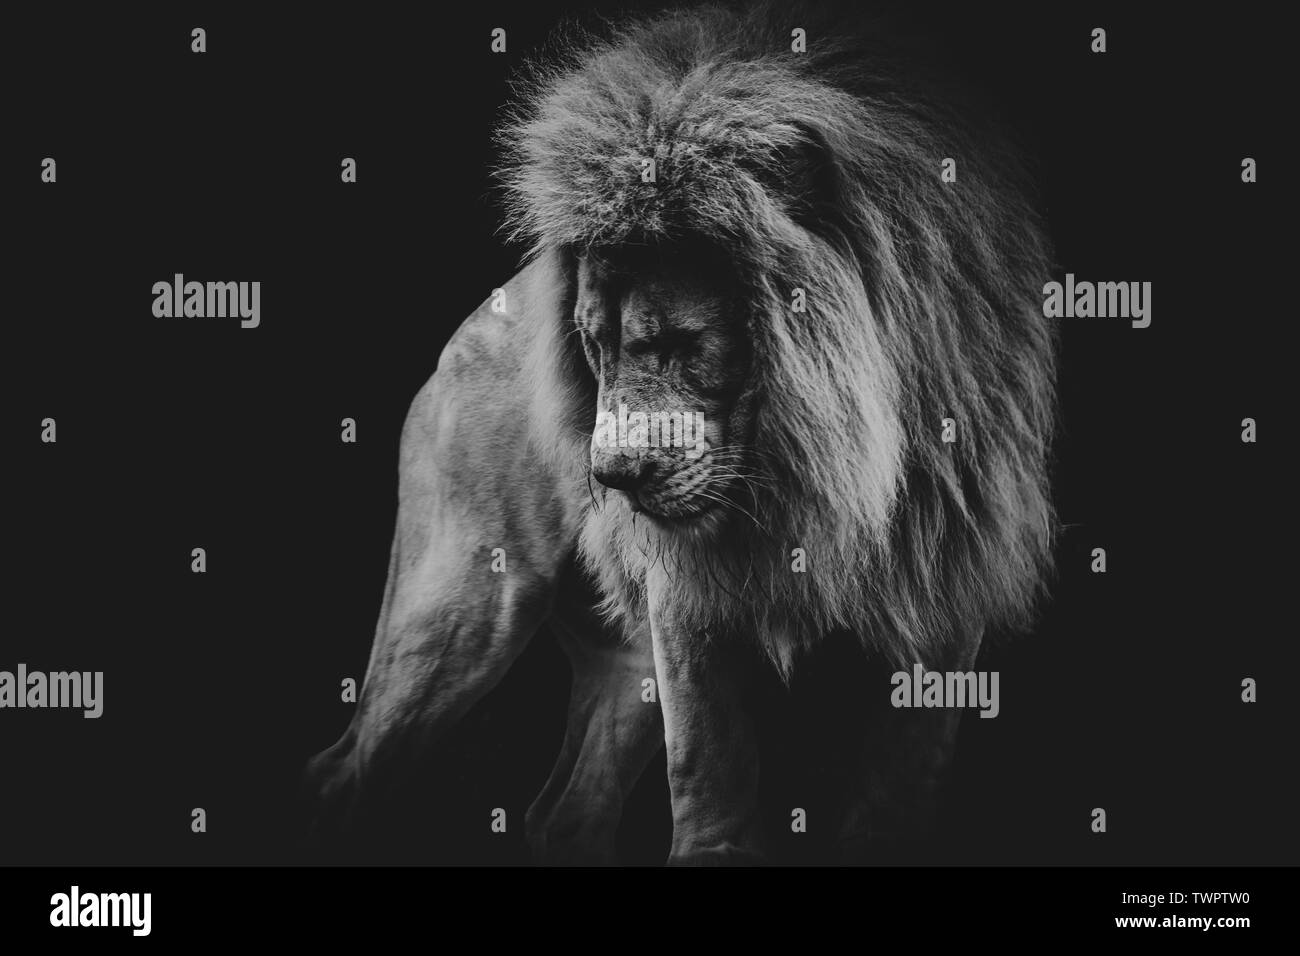 Blanco y negro oscuro retrato de un león africano Foto de stock